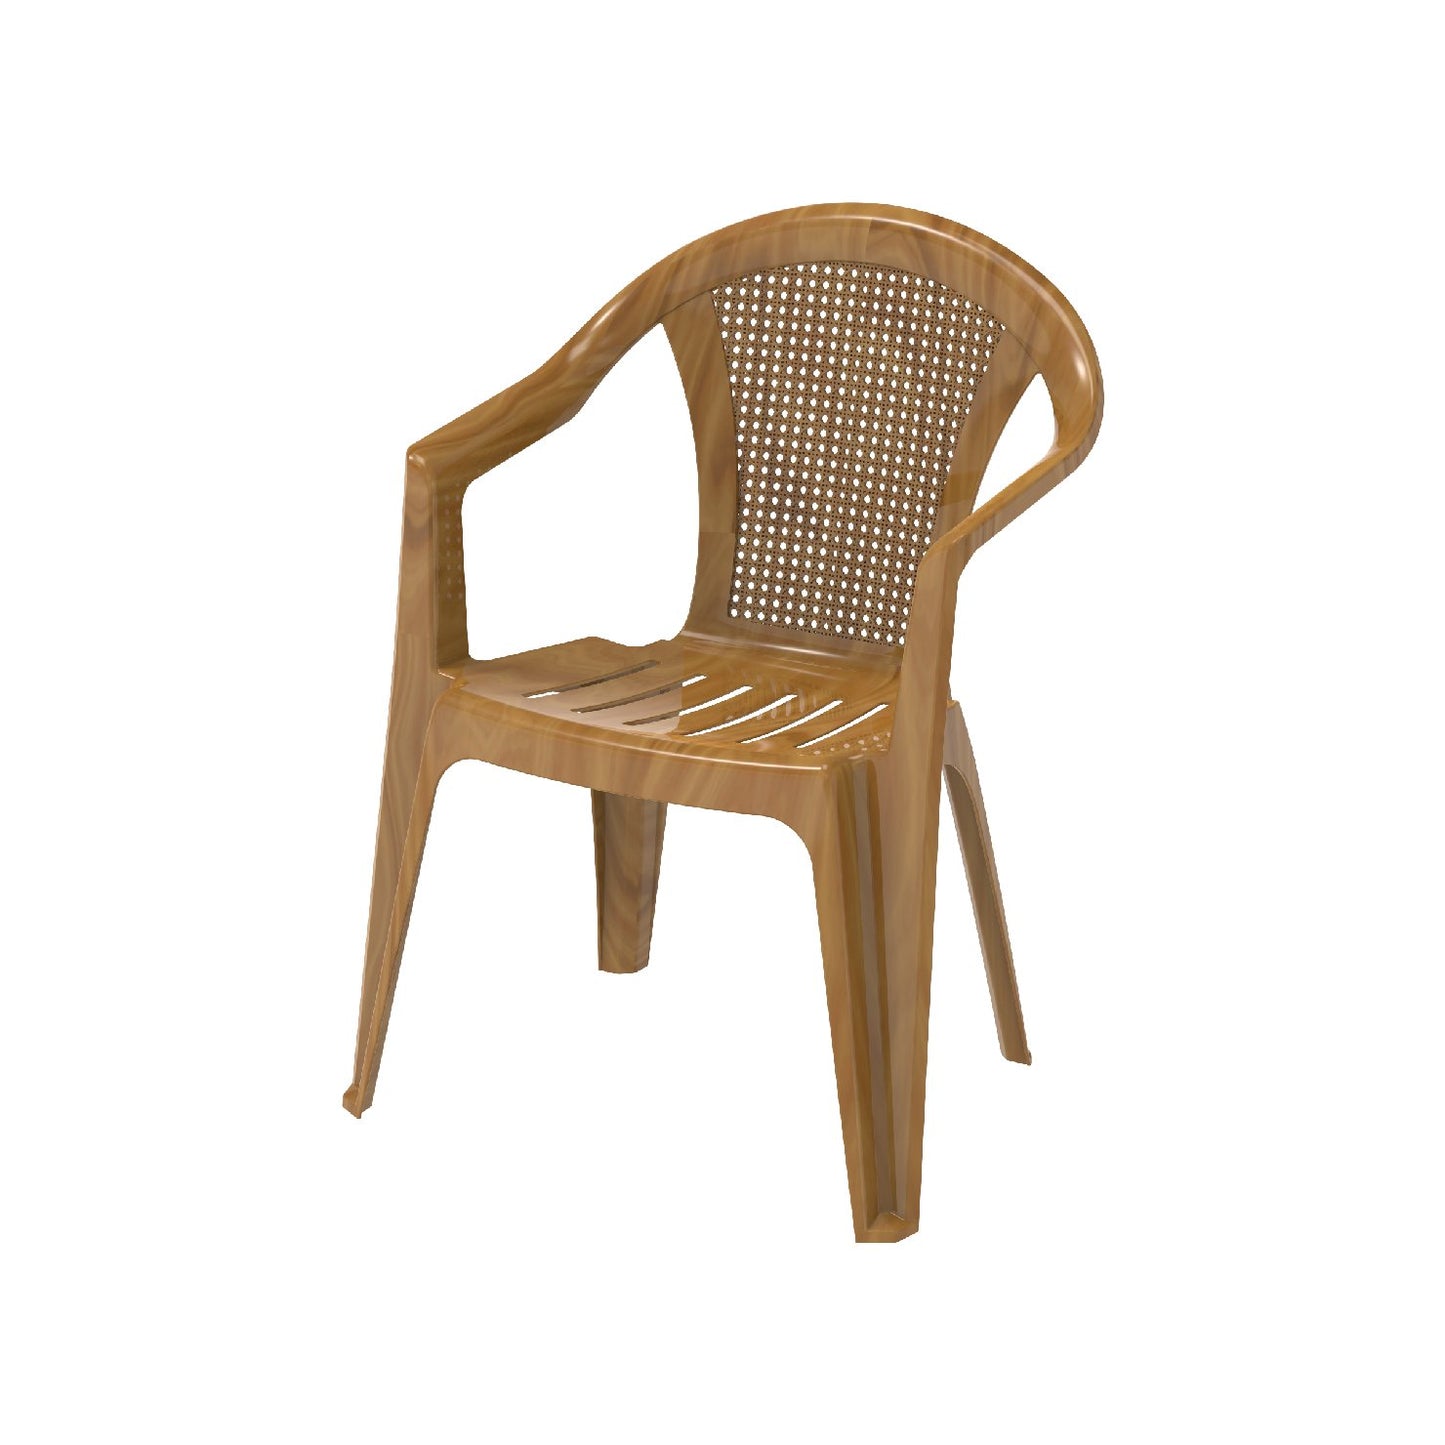 Bamboo Outdoor Garden Chair